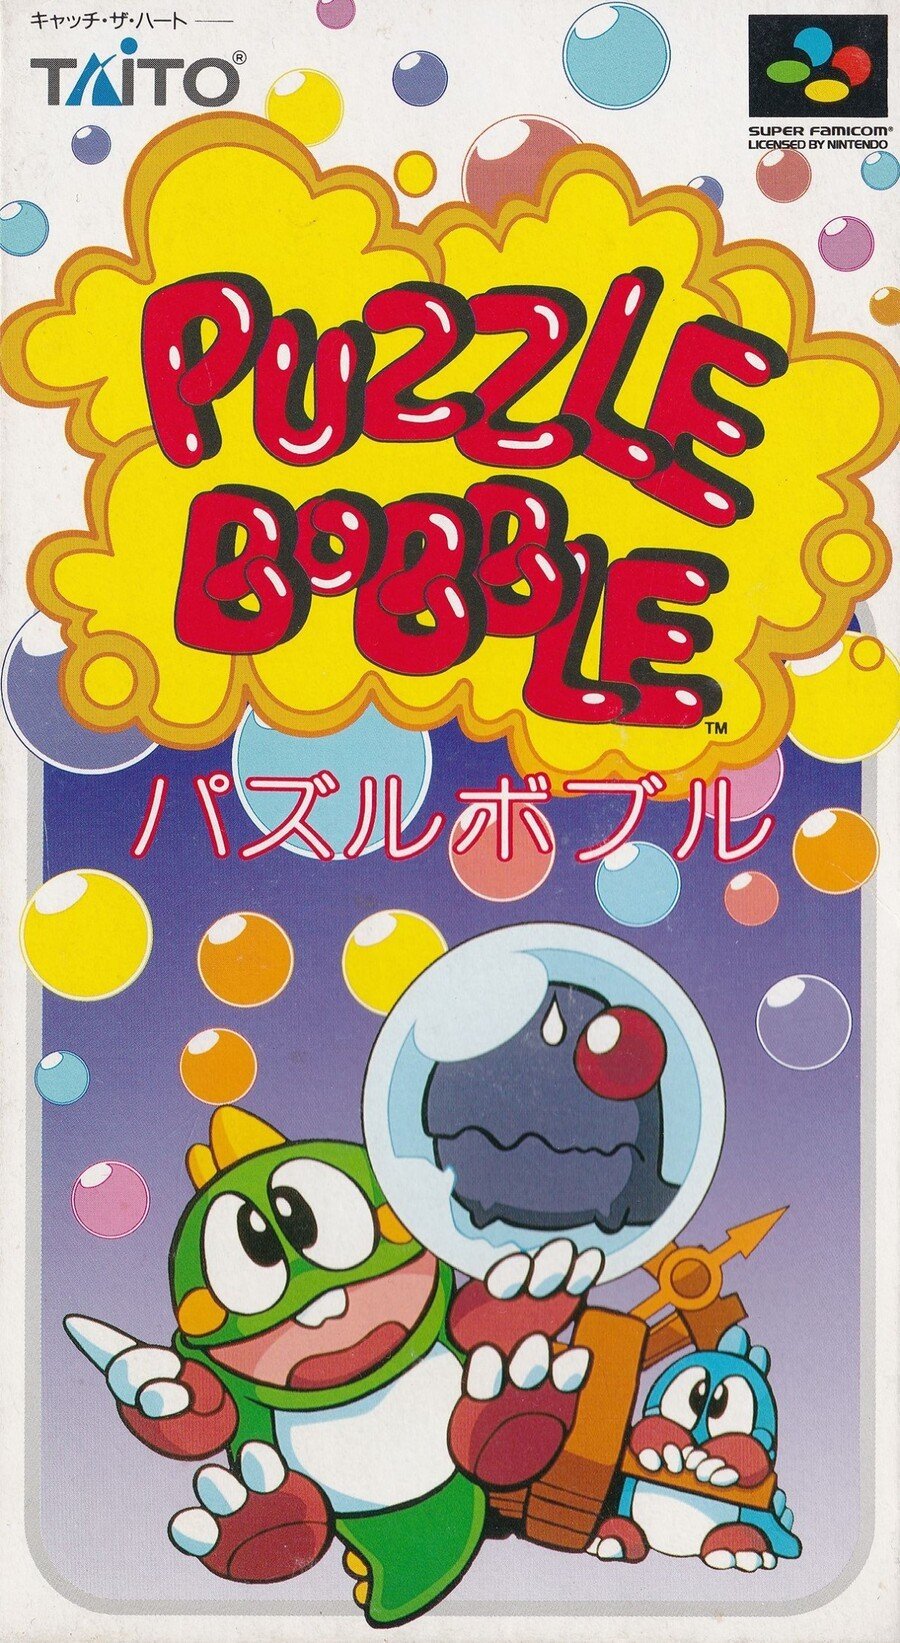 Bubble Bobble  Bubble bobble, Retro gaming art, Bobble art